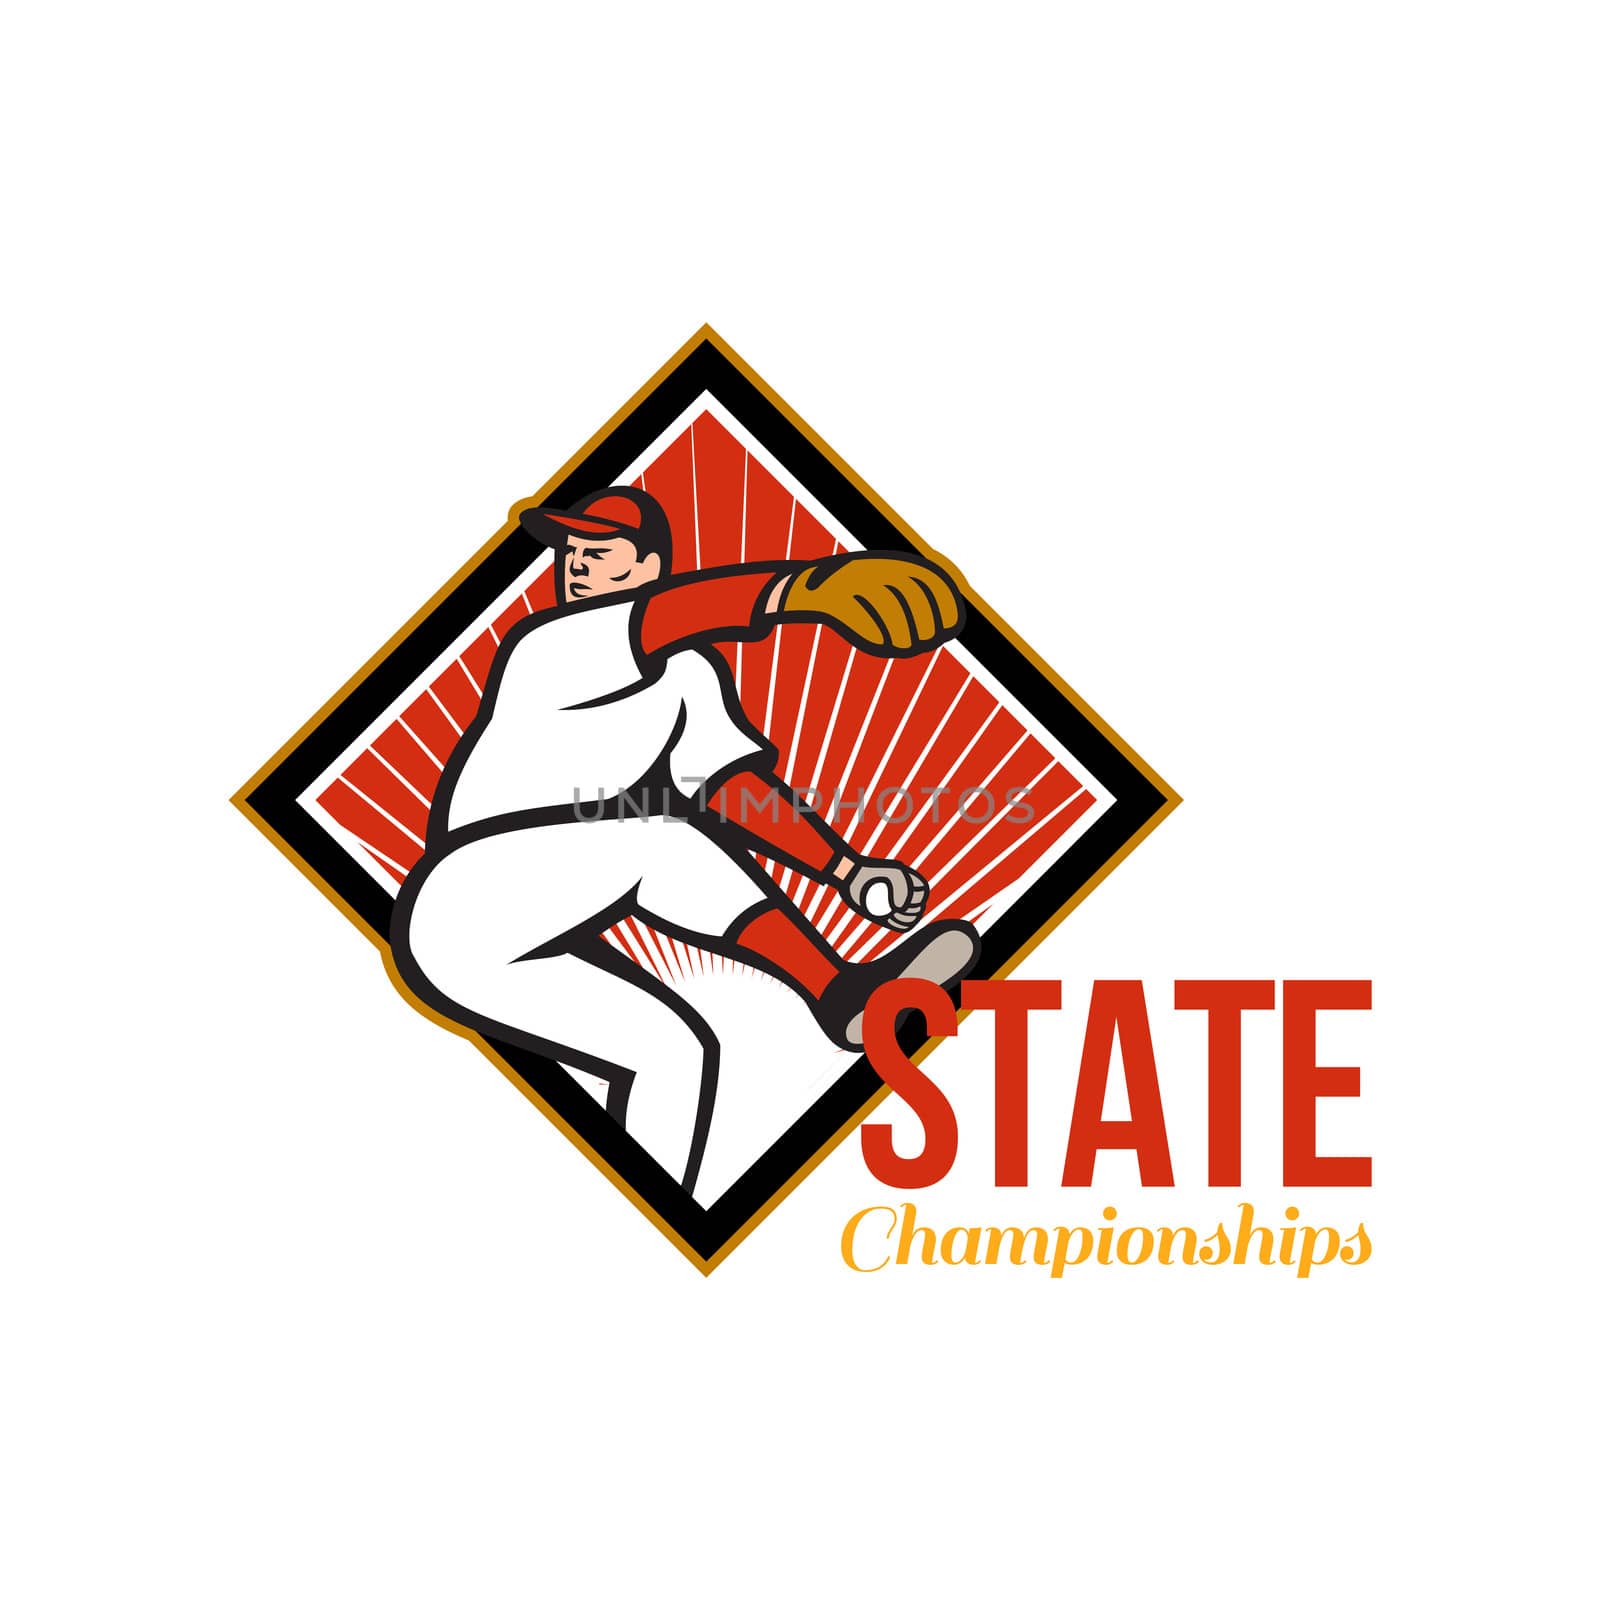  State Championships Baseball by patrimonio